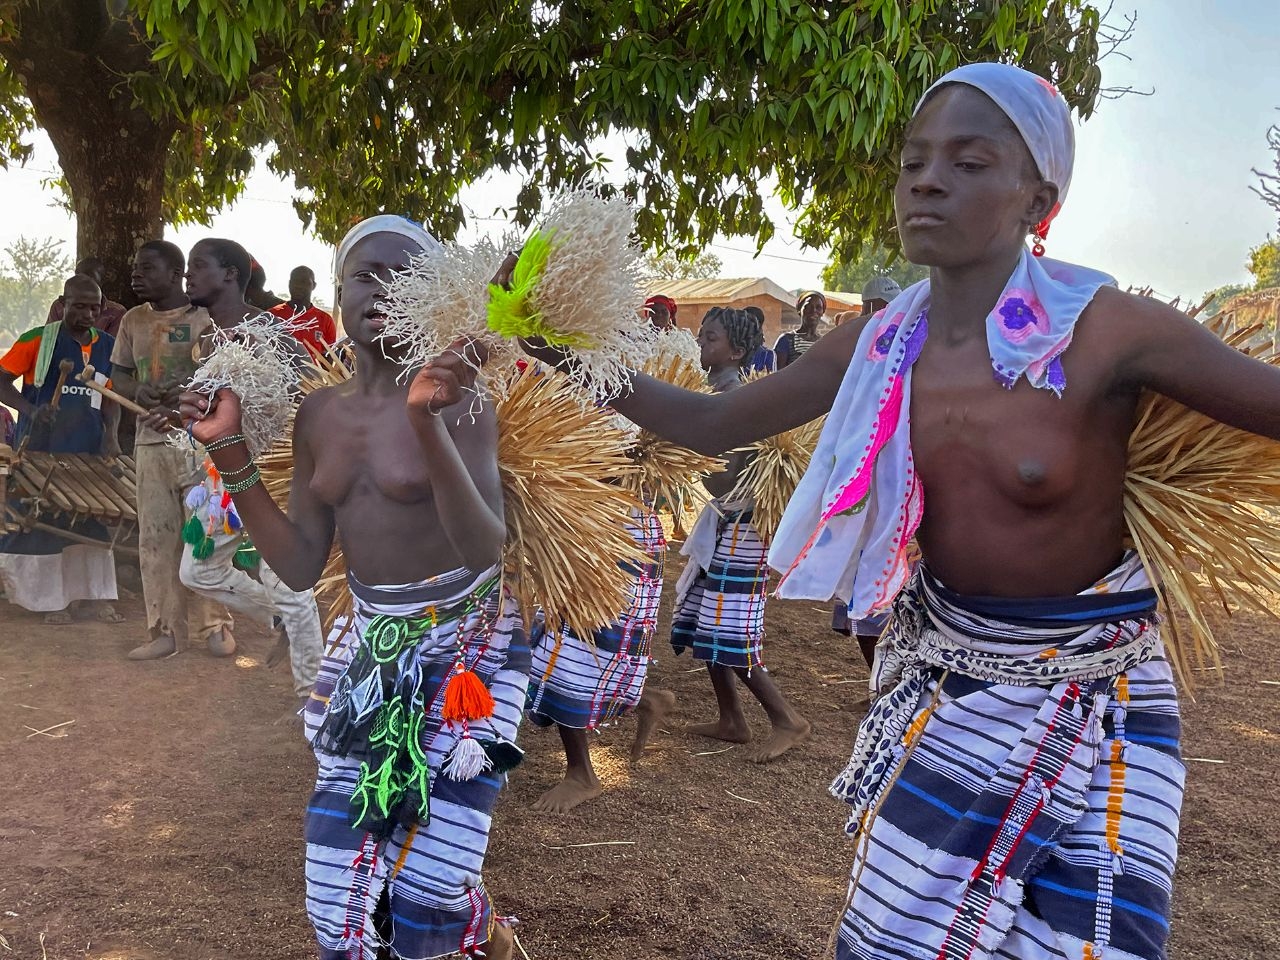 The dance of virgin girls of Sinufo tribe Кунуман, Кот-д'Ивуар